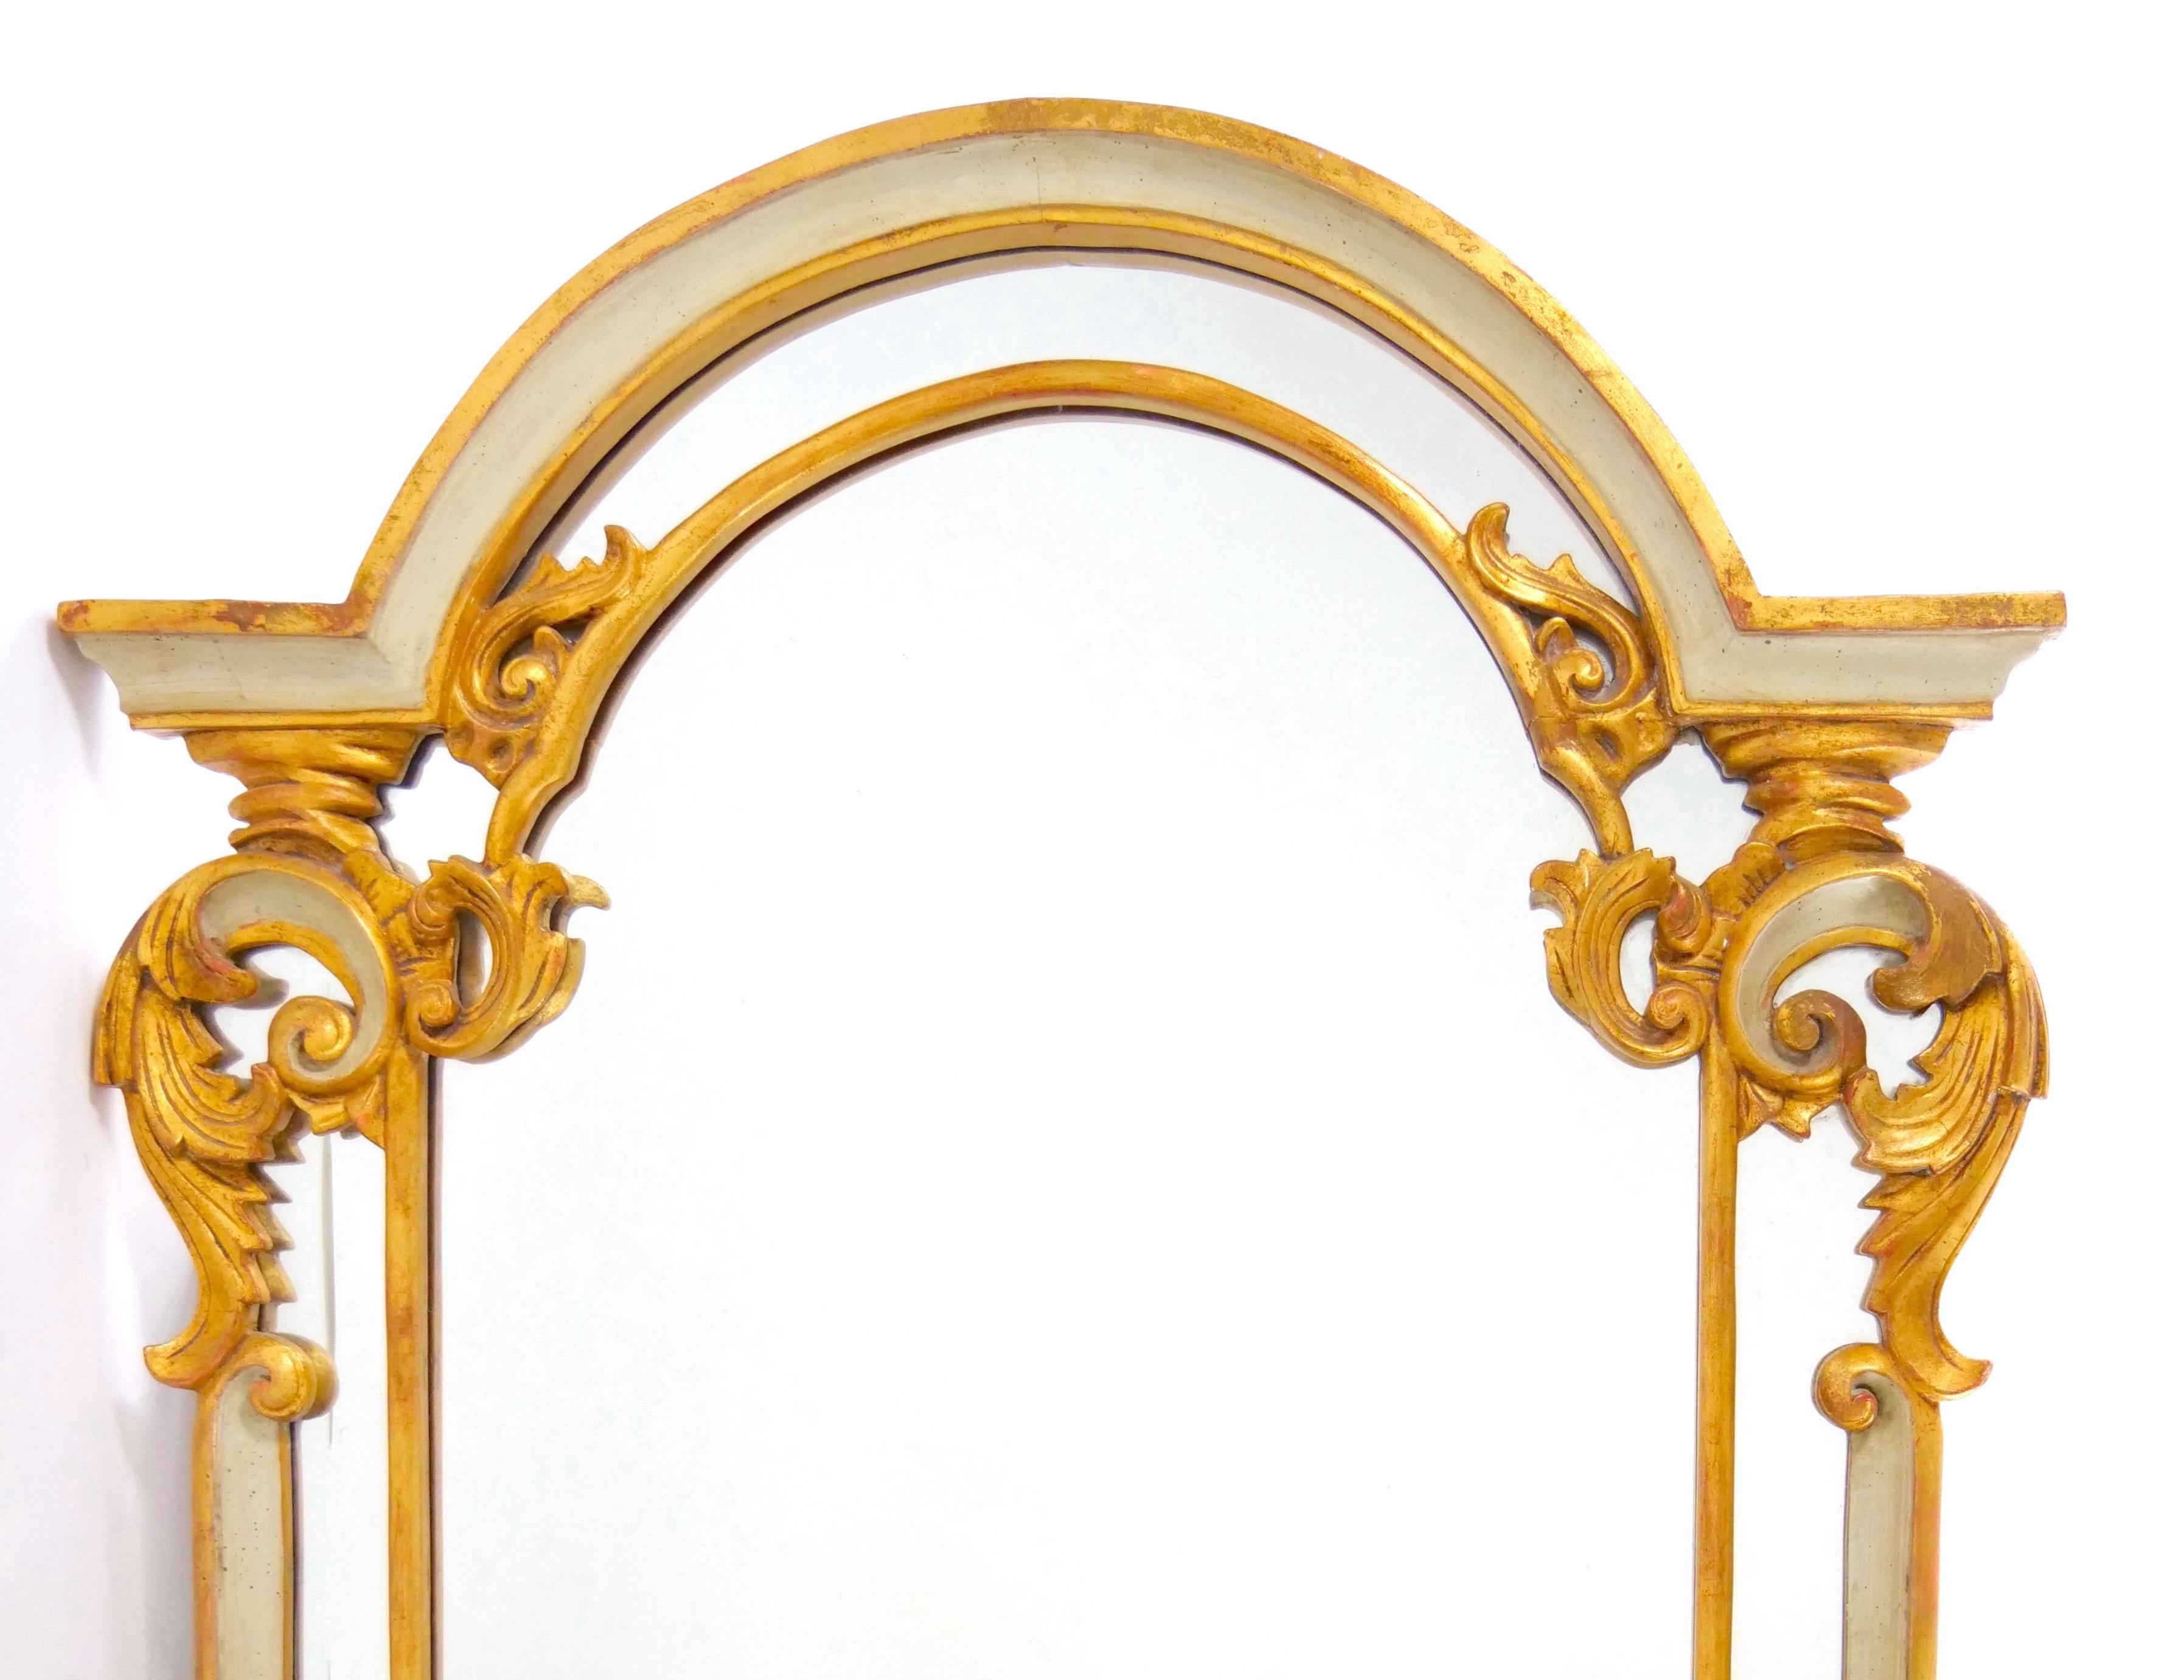 
Gönnen Sie sich die exquisite Schönheit unseres italienischen vergoldeten Holzes aus der Mitte des 20. Jahrhunderts mit handbemaltem Rahmen und hängendem, abgeschrägtem Wandspiegel. Dieses bemerkenswerte Stück fängt die Essenz zeitloser Eleganz und